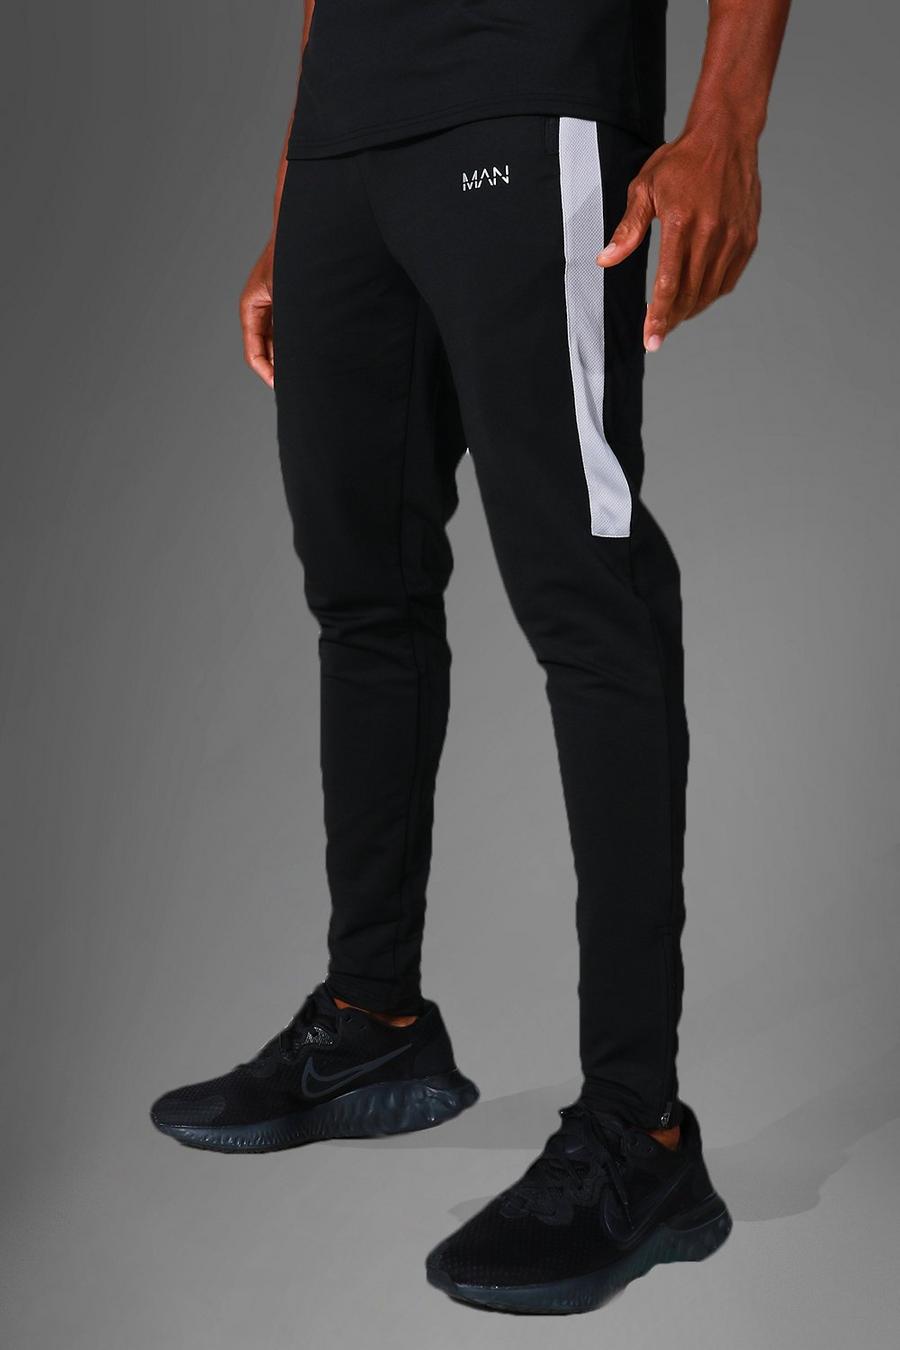 Pantalón deportivo MAN Active resistente con paneles de patrón, Black nero image number 1